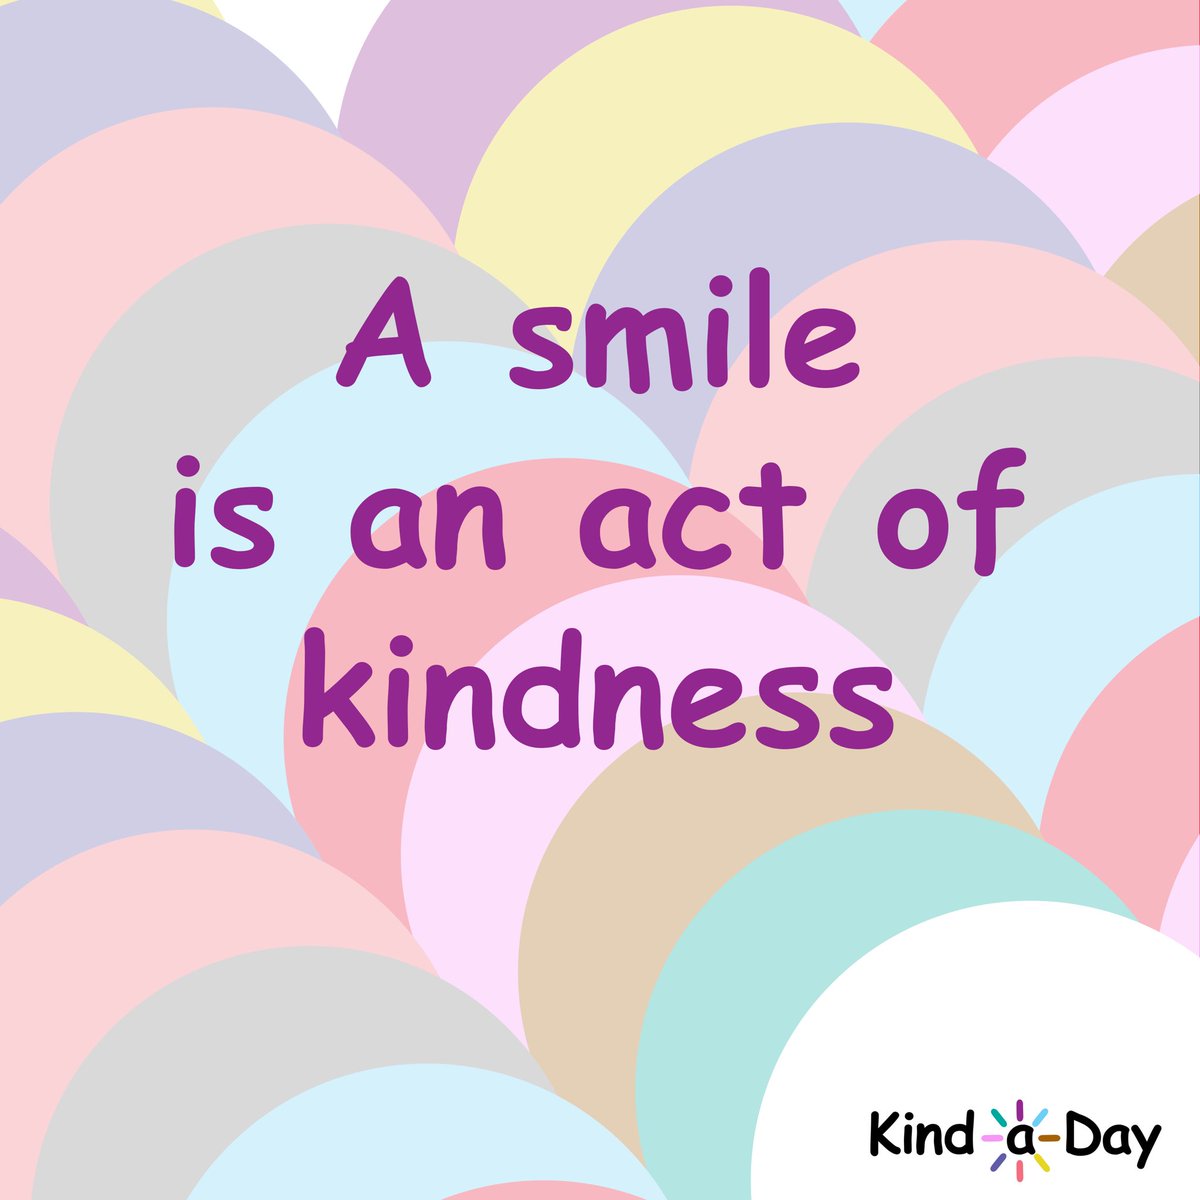 A smile is an act of kindness 😊
 
#smile #smiling #ShareASmile #kind #BeKind #kindness #KindLife #ActsOfKindness #SpreadKindness #KindnessMatters #ChooseKindness #KindnessWins #KindaDay #KindnessAlways #KindnessEveryday #Kindness365 #KindnessChallenge